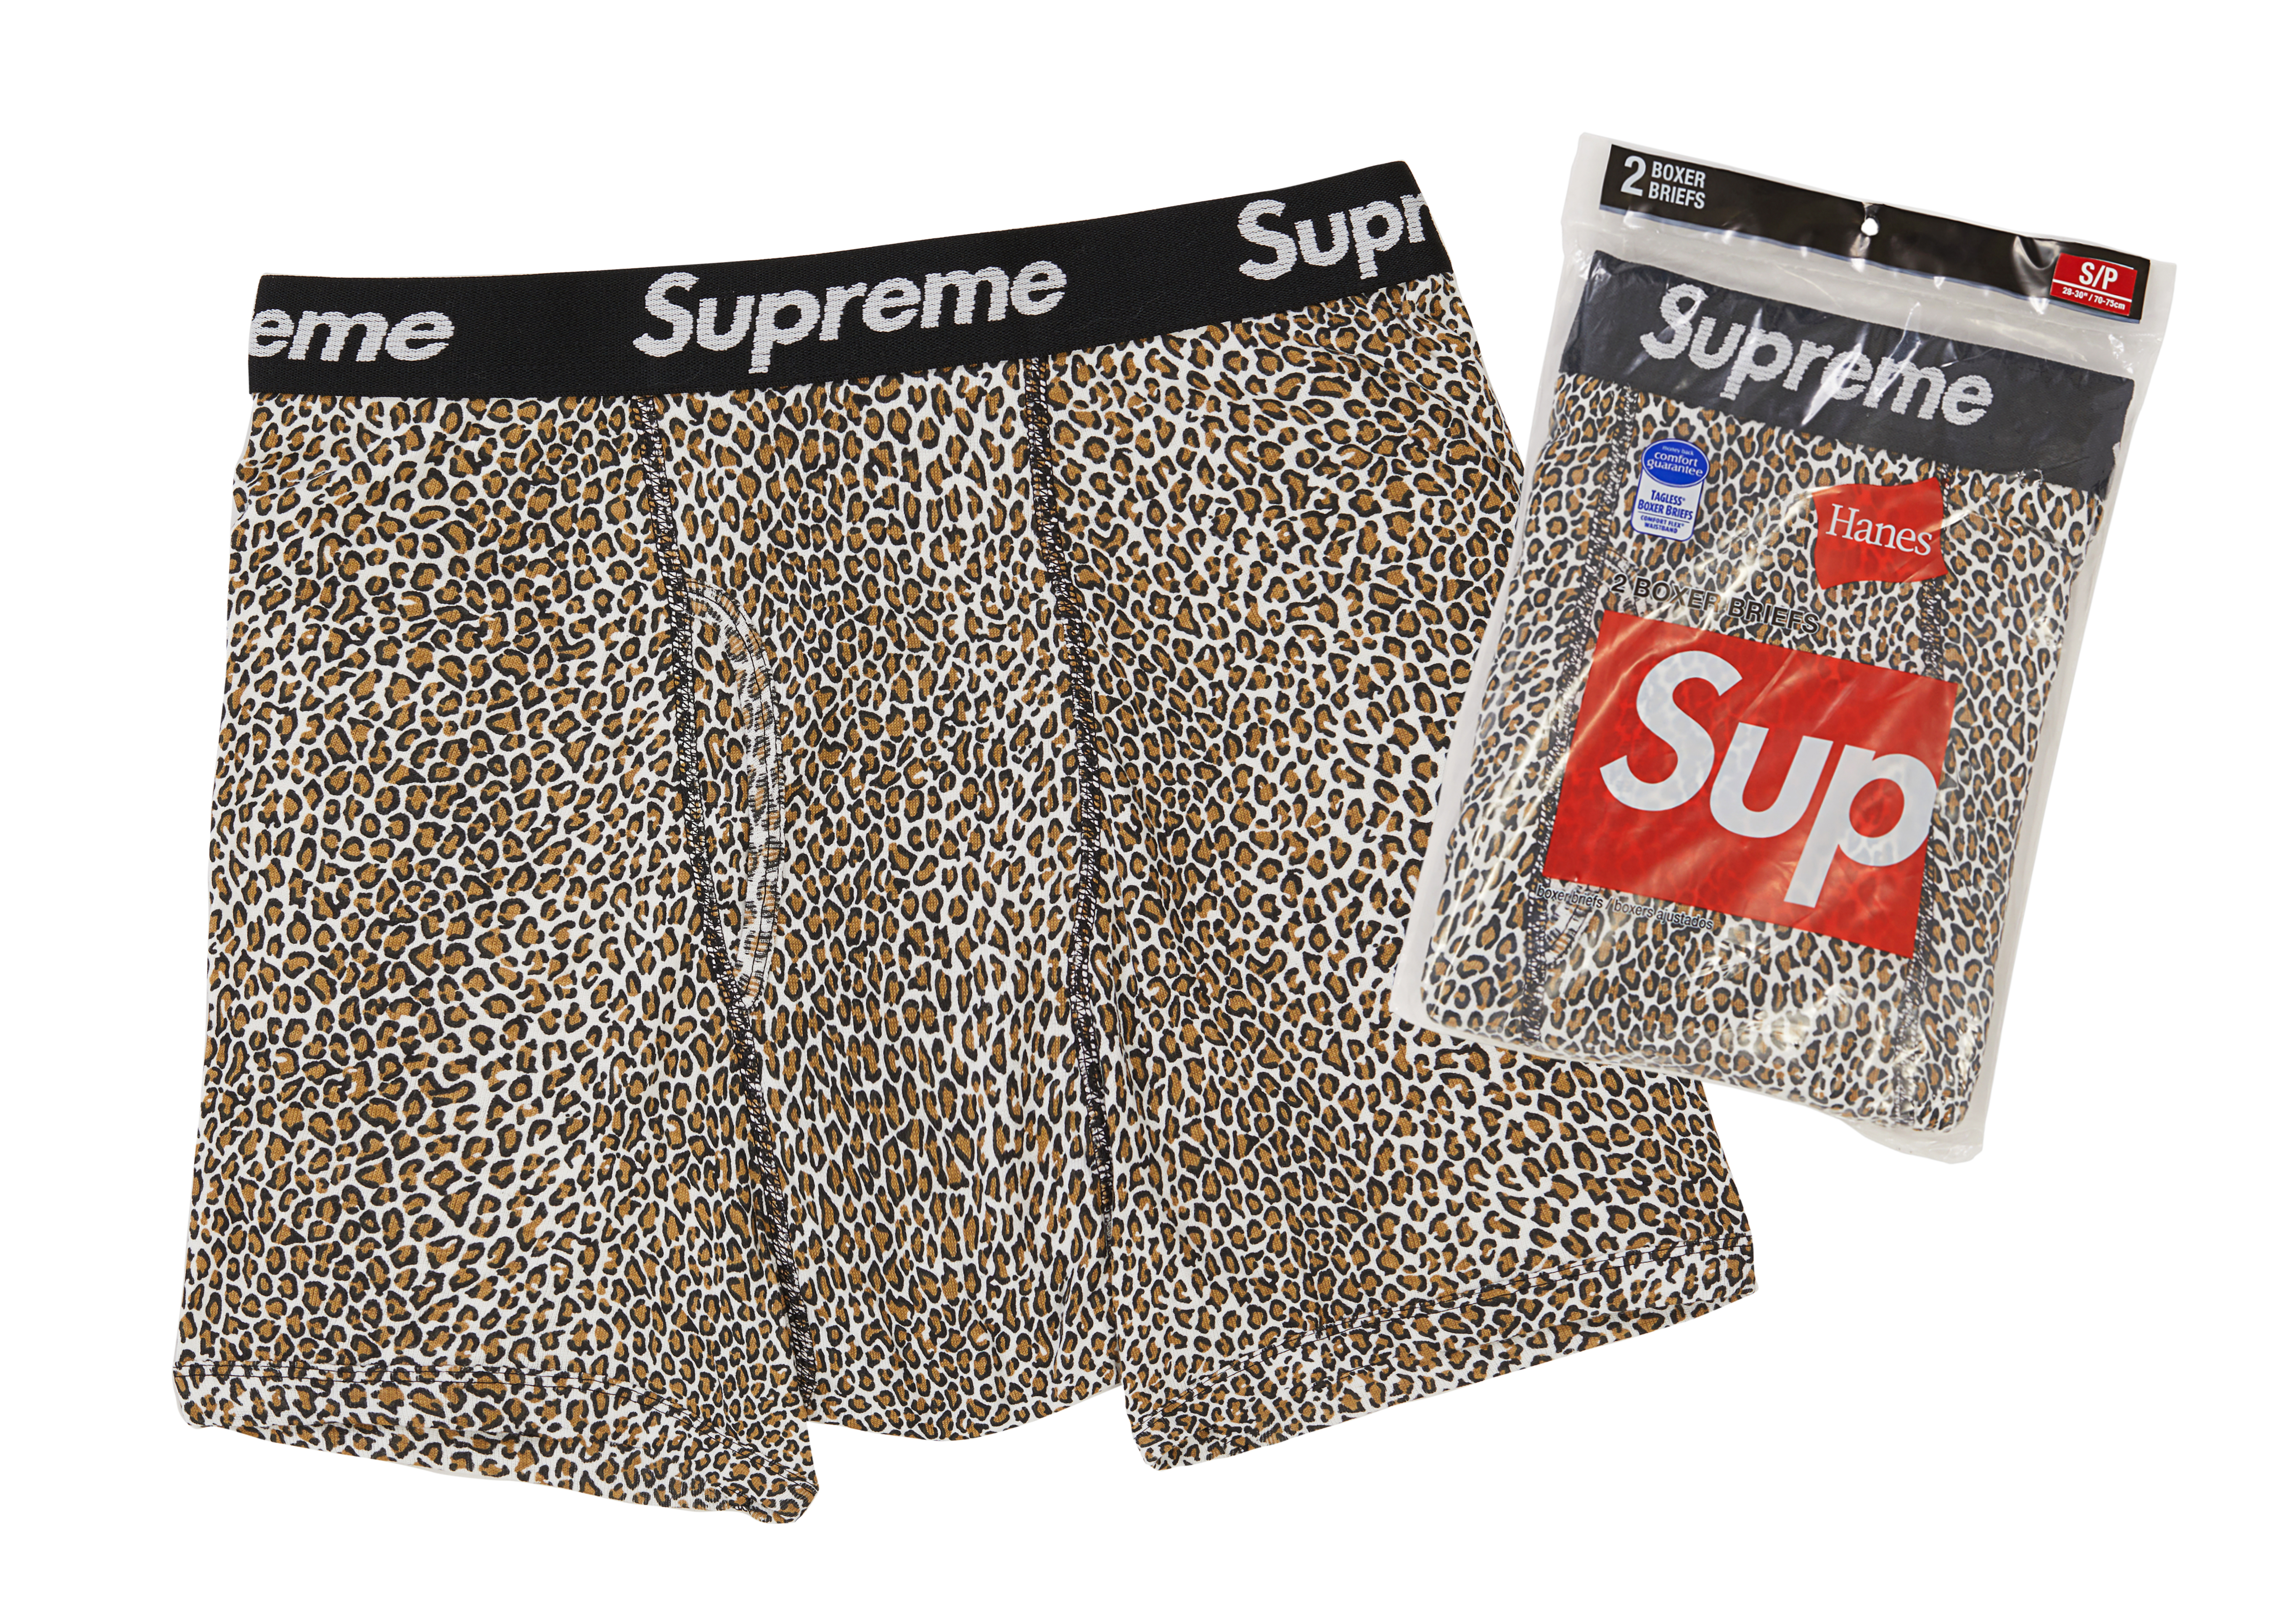 Supreme Hanes Leopard Boxer Briefs (2 Pack) Leopard